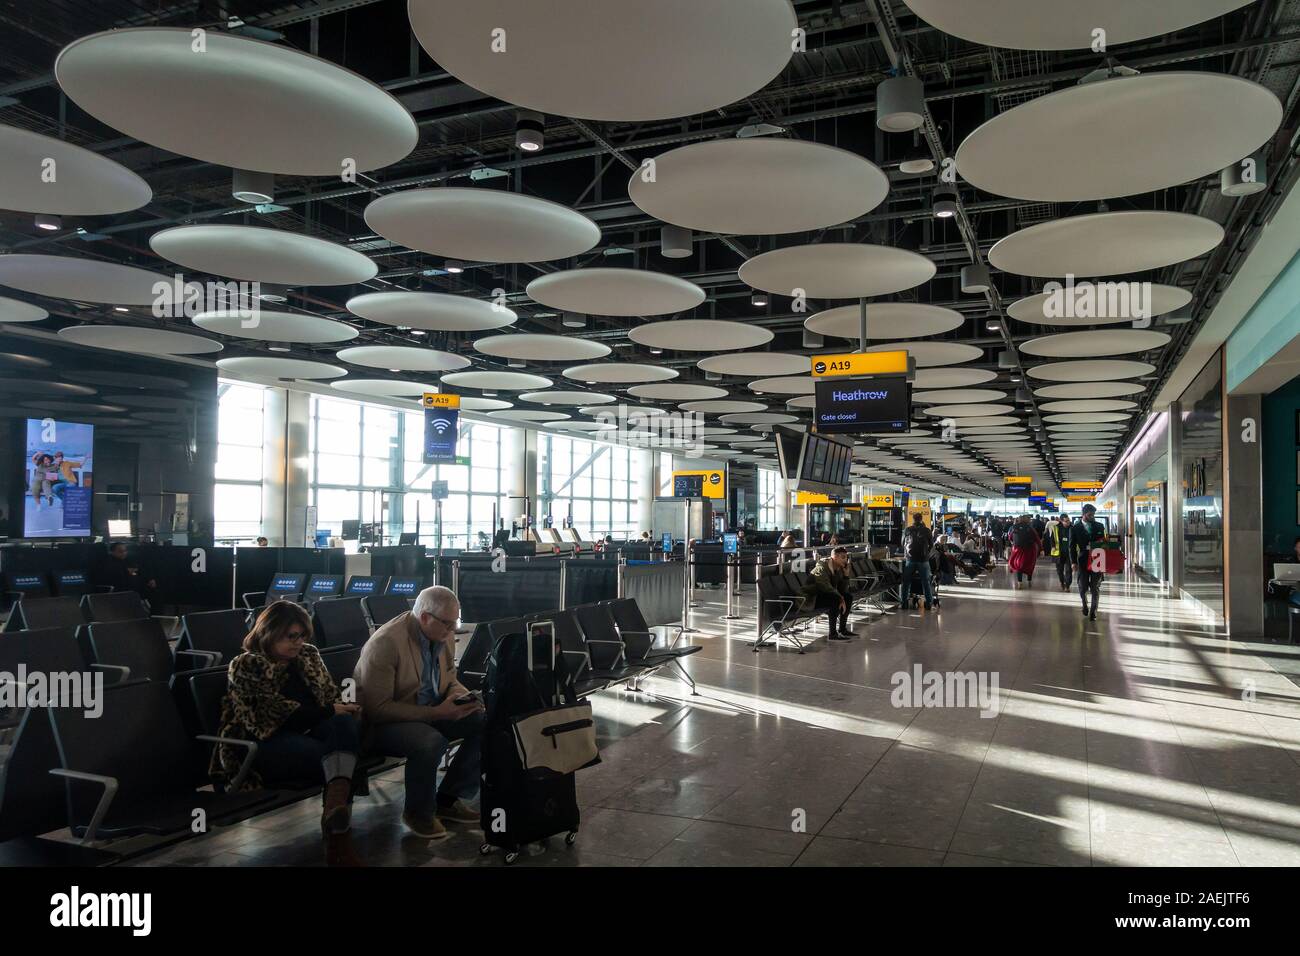 Les gens attendent à l'aéroport de portes à la borne 5, de l'aéroport Heathrow de Londres. Les disques de décoration décorer le plafond. Banque D'Images